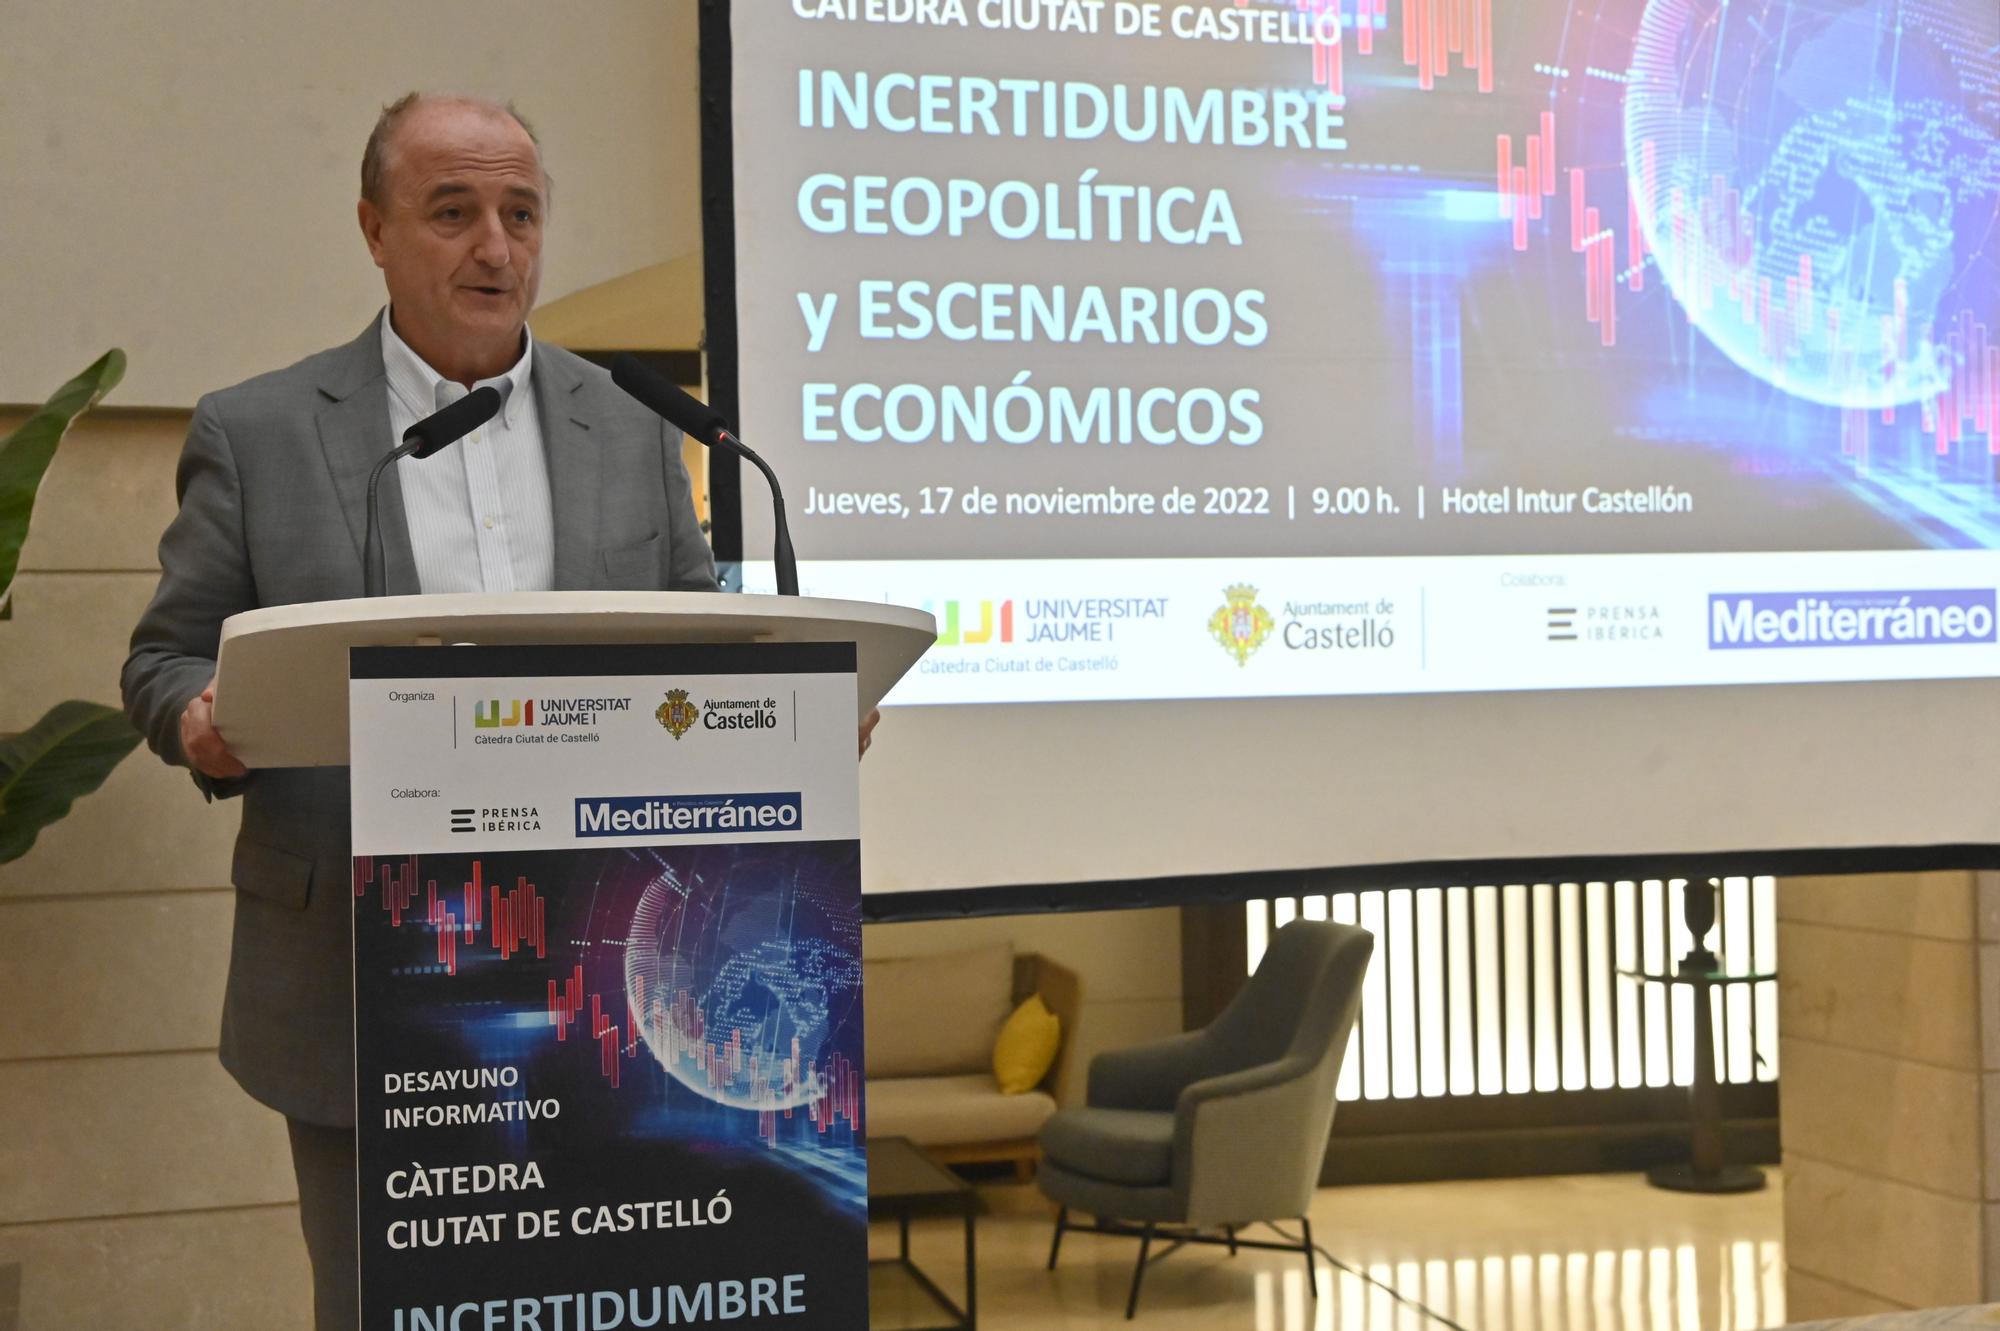 Desayuno informativo Càtedra Ciutat de Castelló: 'Incertidumbre geopolítica y escenarios económicos'